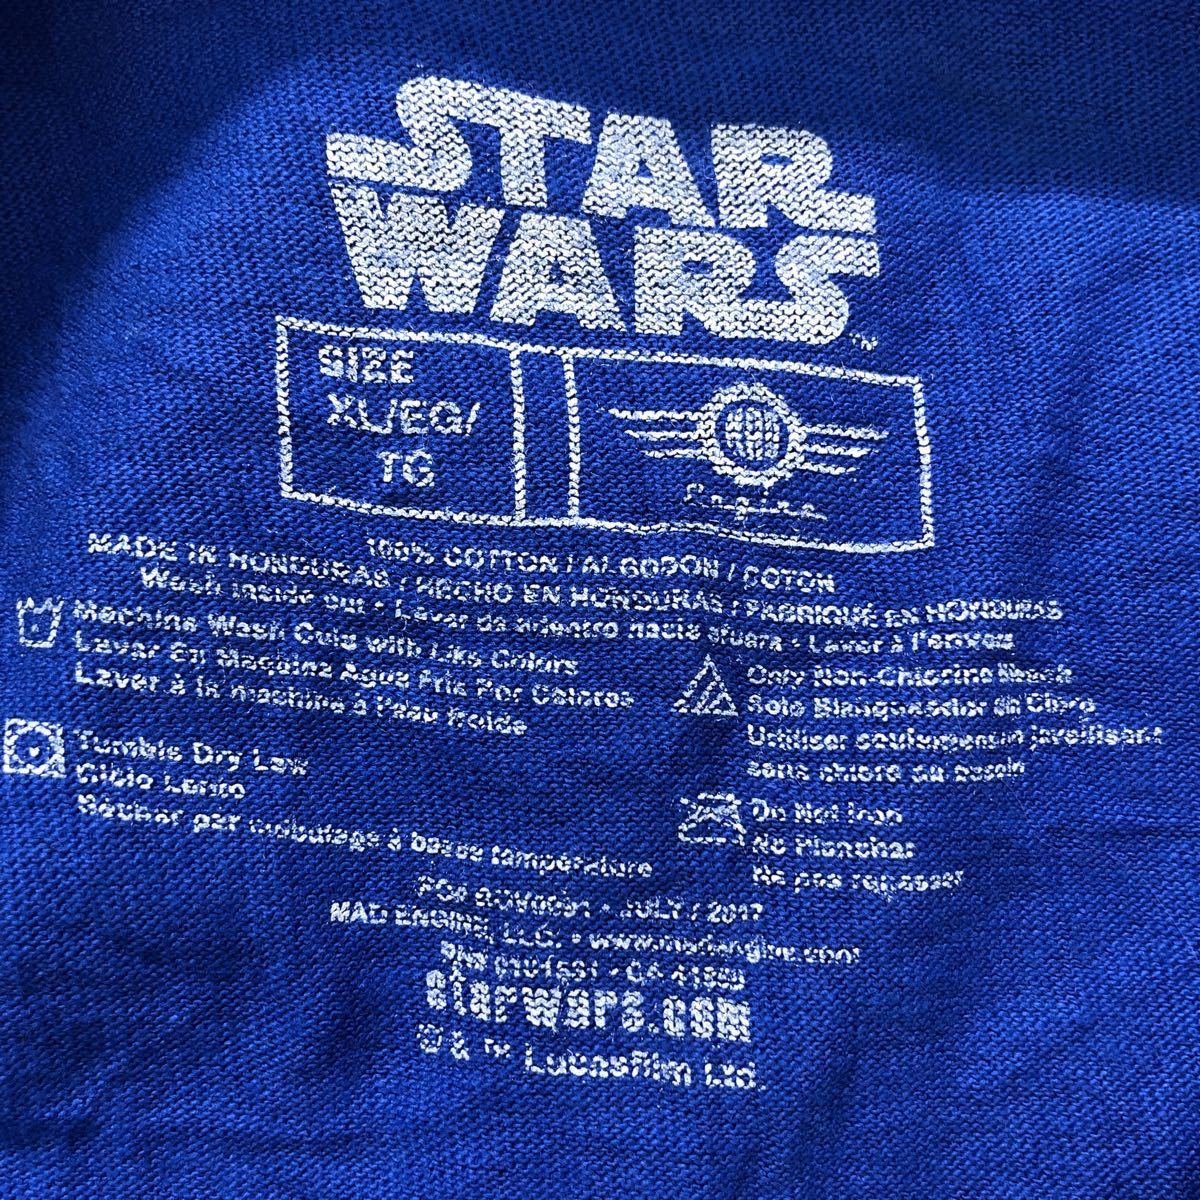 STAR WARS long sleeve print T-shirt XL blue Star Wars long T long T-shirt old clothes . America buying up a503-5998